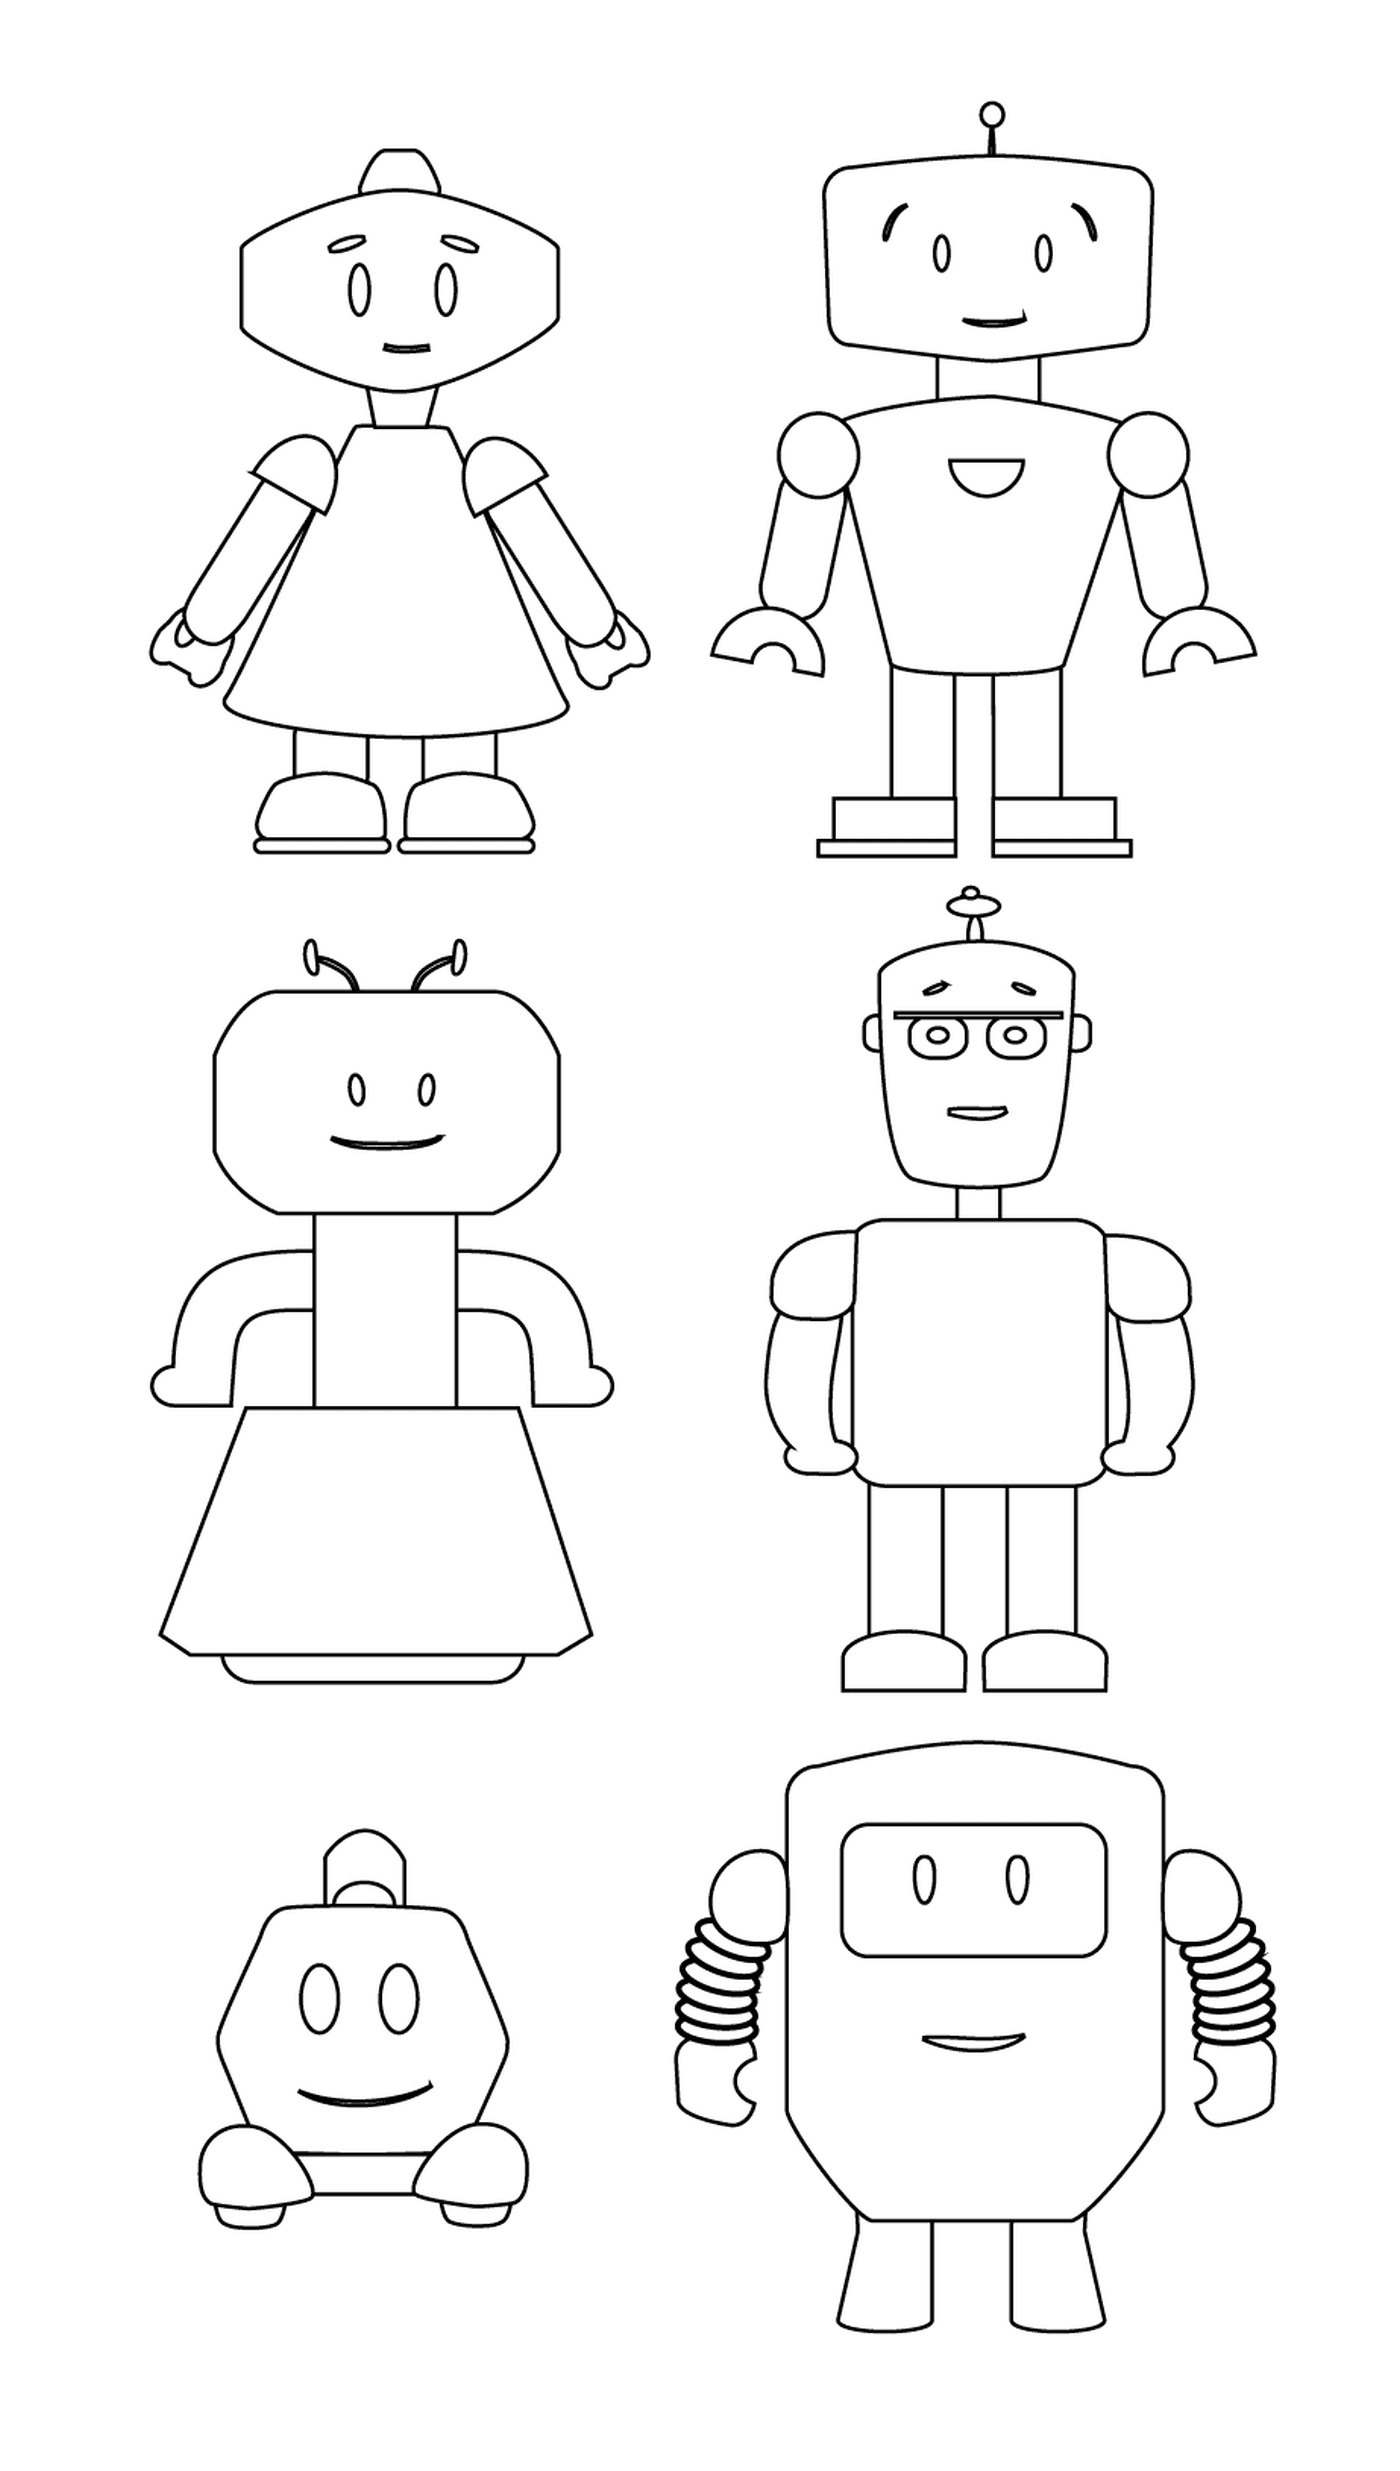  أسرة الروبوتات الرائعة 